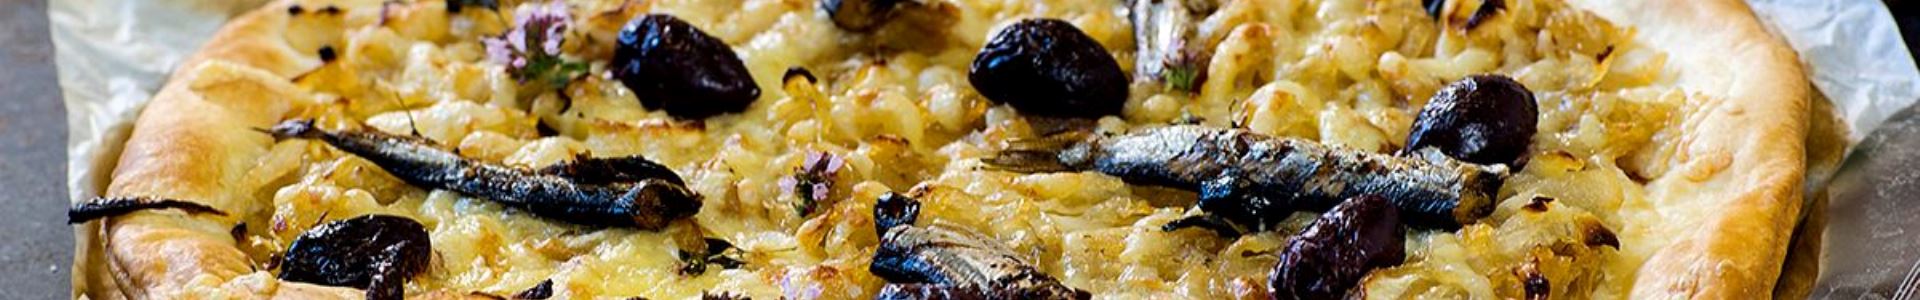 Піца з сардинами та оливками